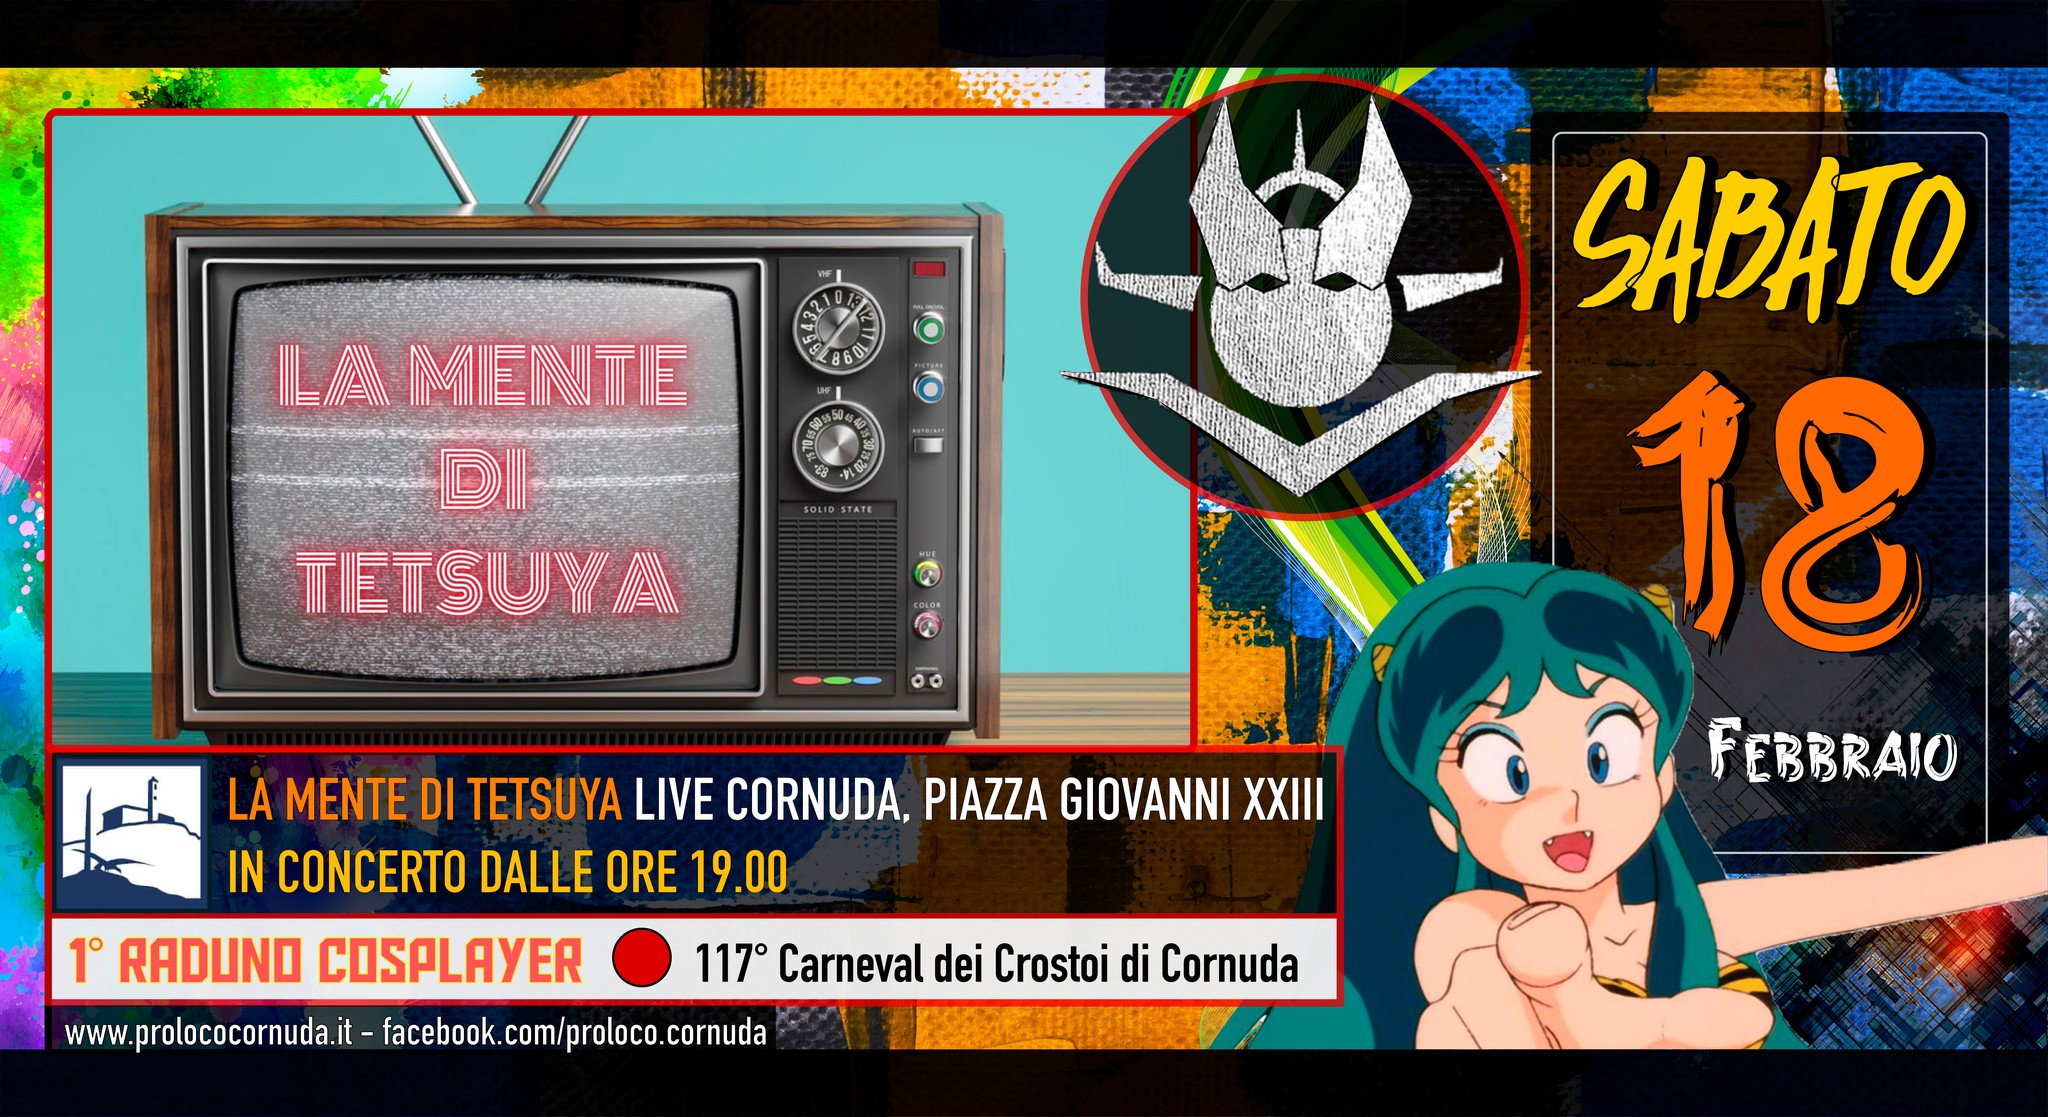 Live e Cosplay @ Carneval dei Crostoi di Cornuda